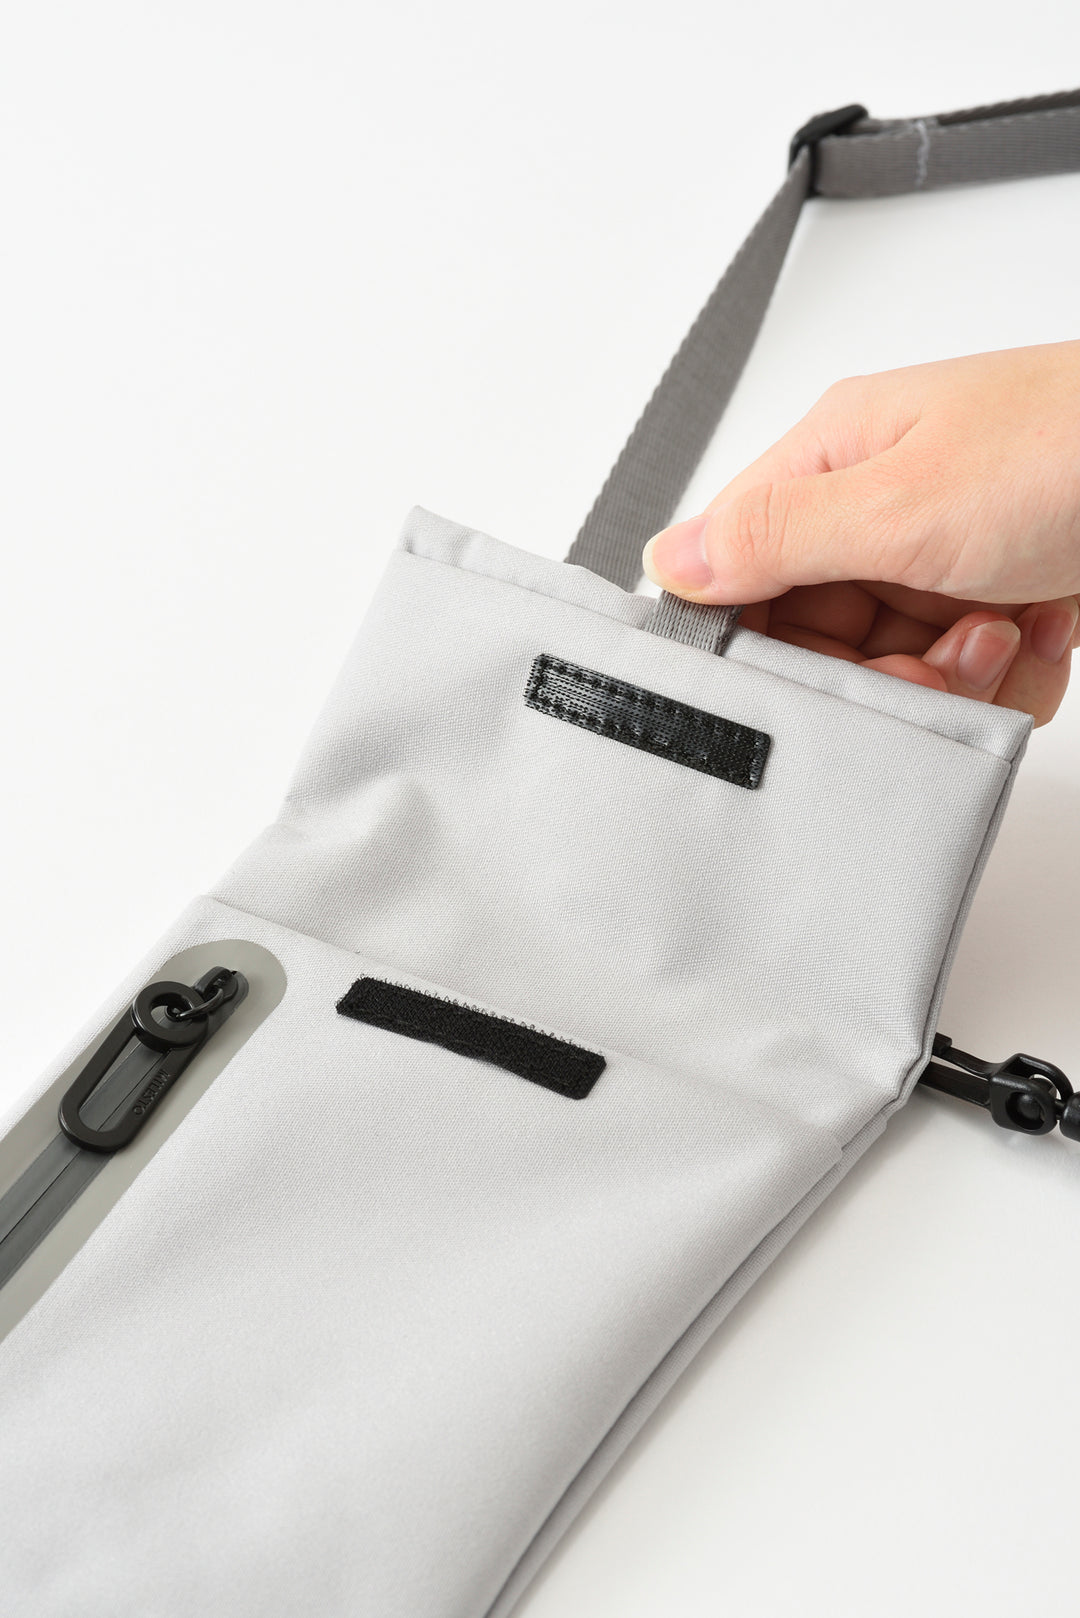 MILESTO LIKID Mobile Sacoche Bag - Light Gray MLS847-LGY